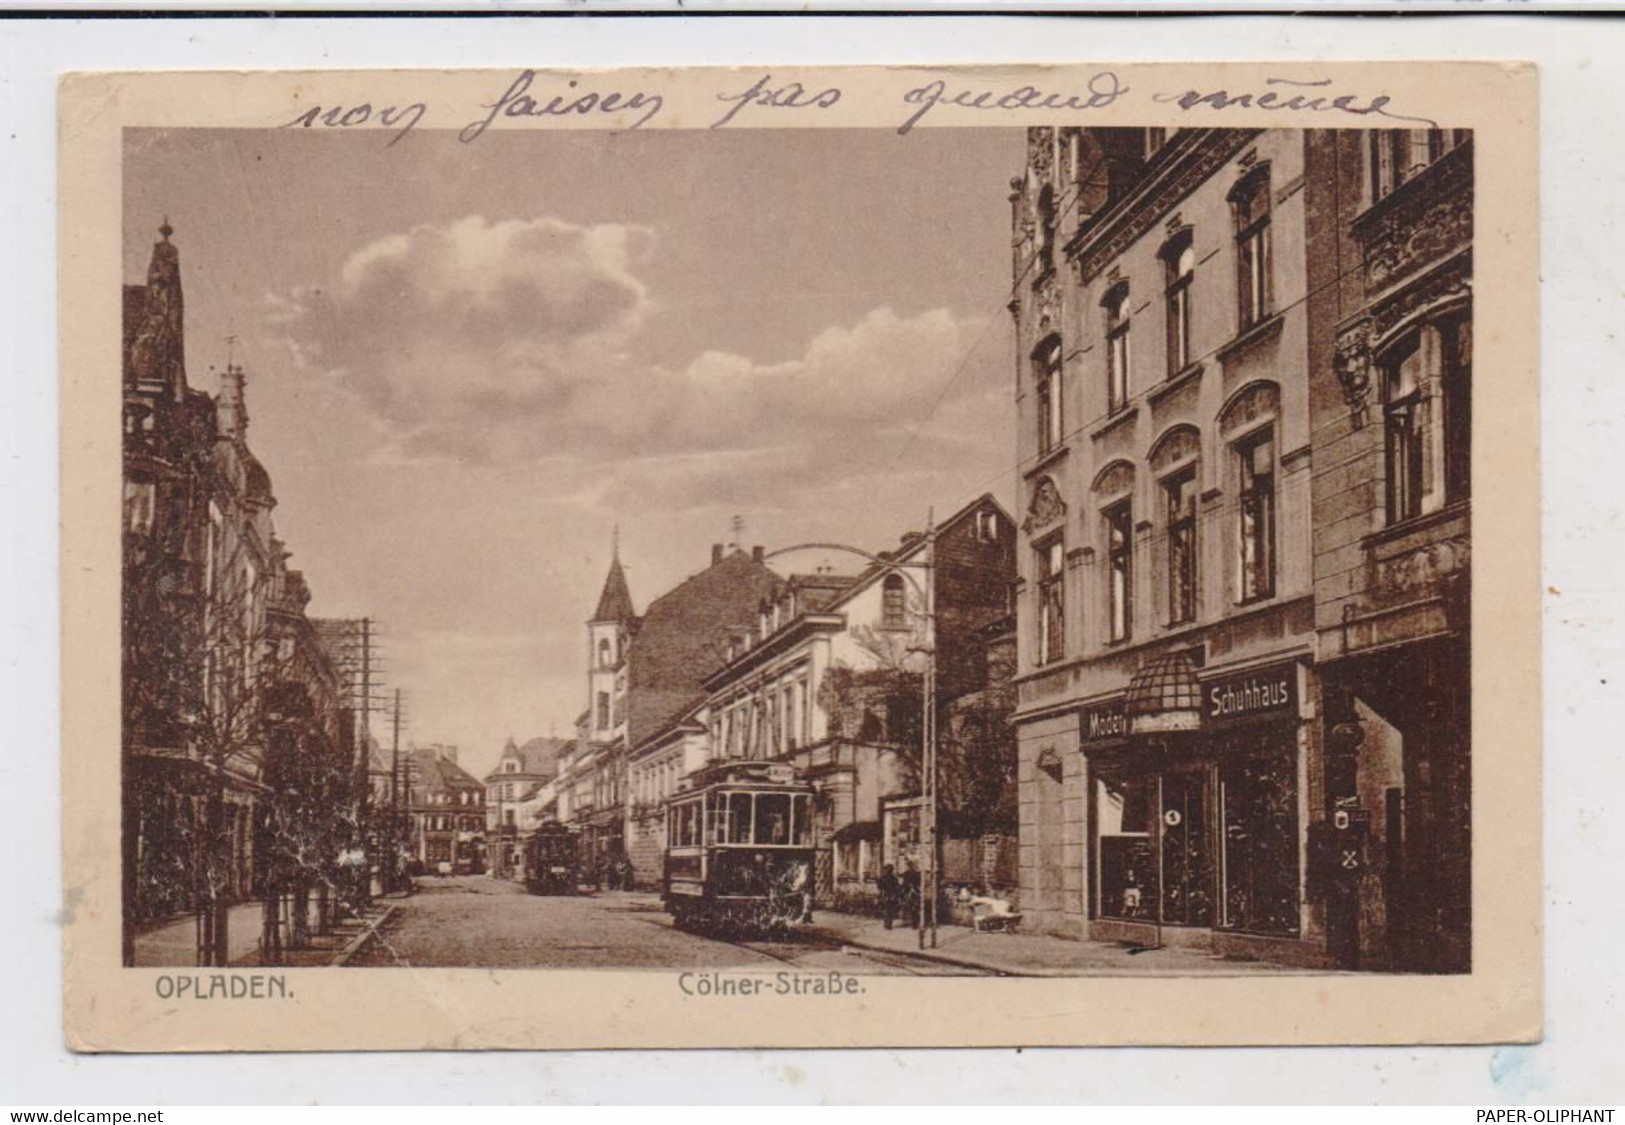 5090 LEVERKUSEN - OPLADEN, Kölner Strasse 1921, Strassenbahnen, Druckstelle - Leverkusen